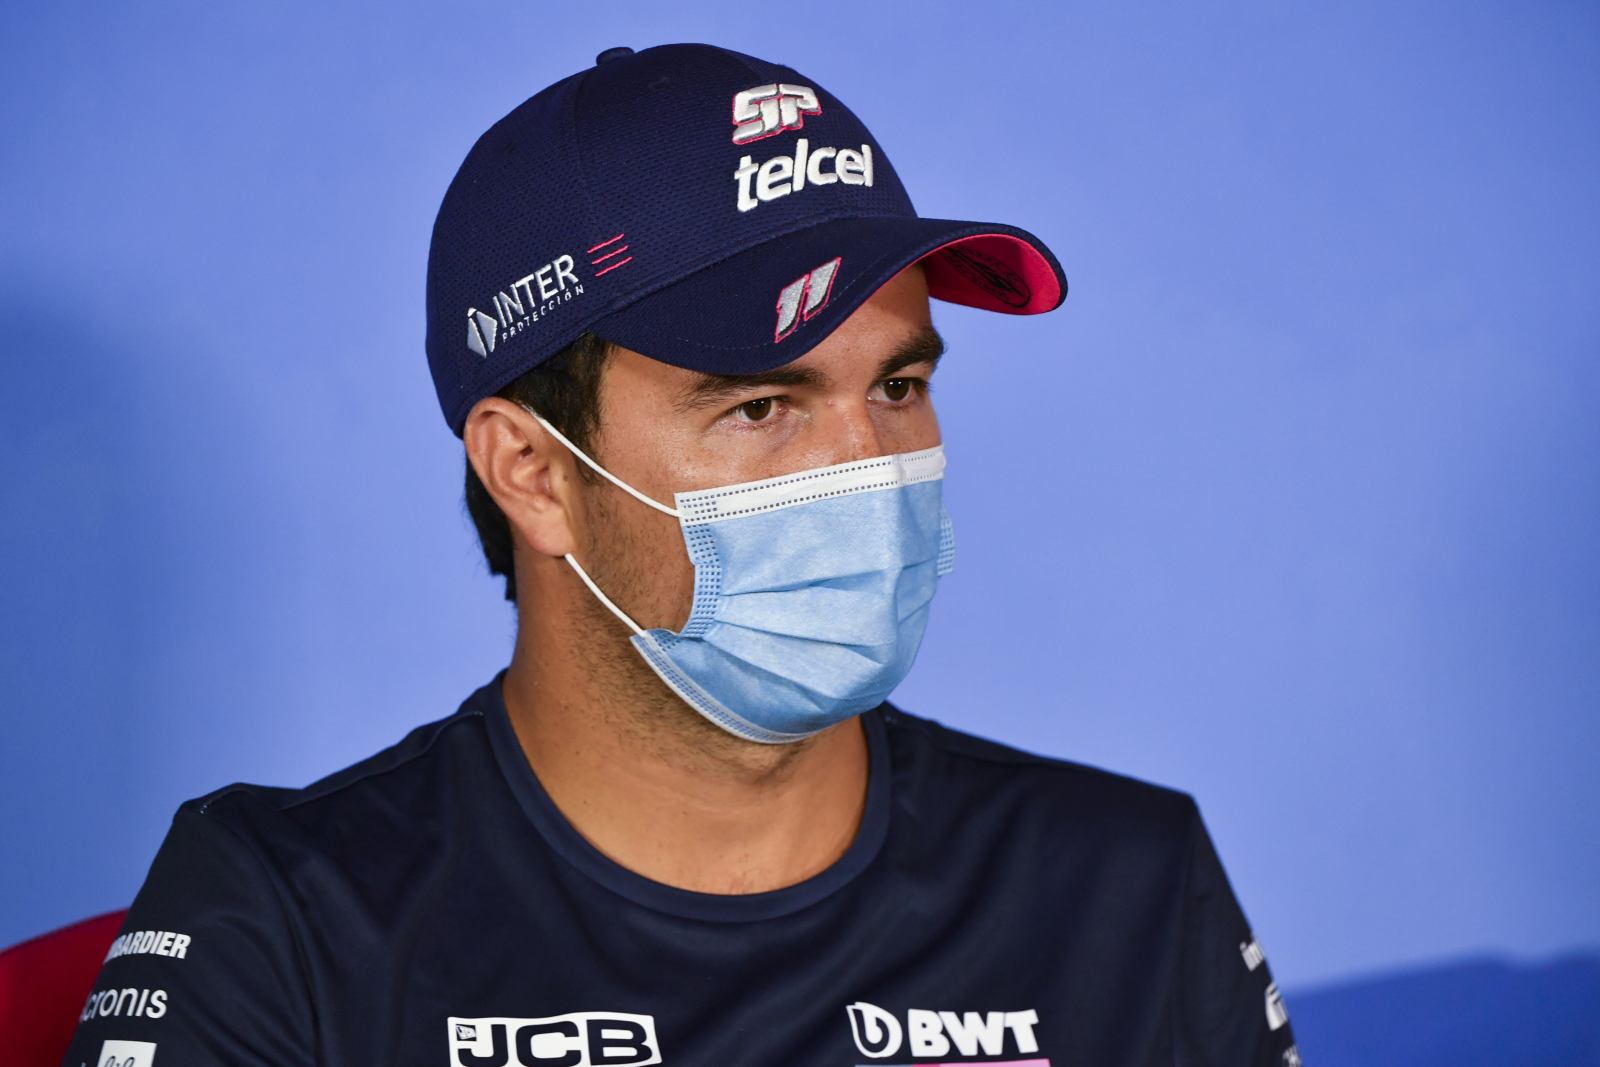 Sergio Pérez inicia a 10ª temporada ininterrupta na Fórmula 1 